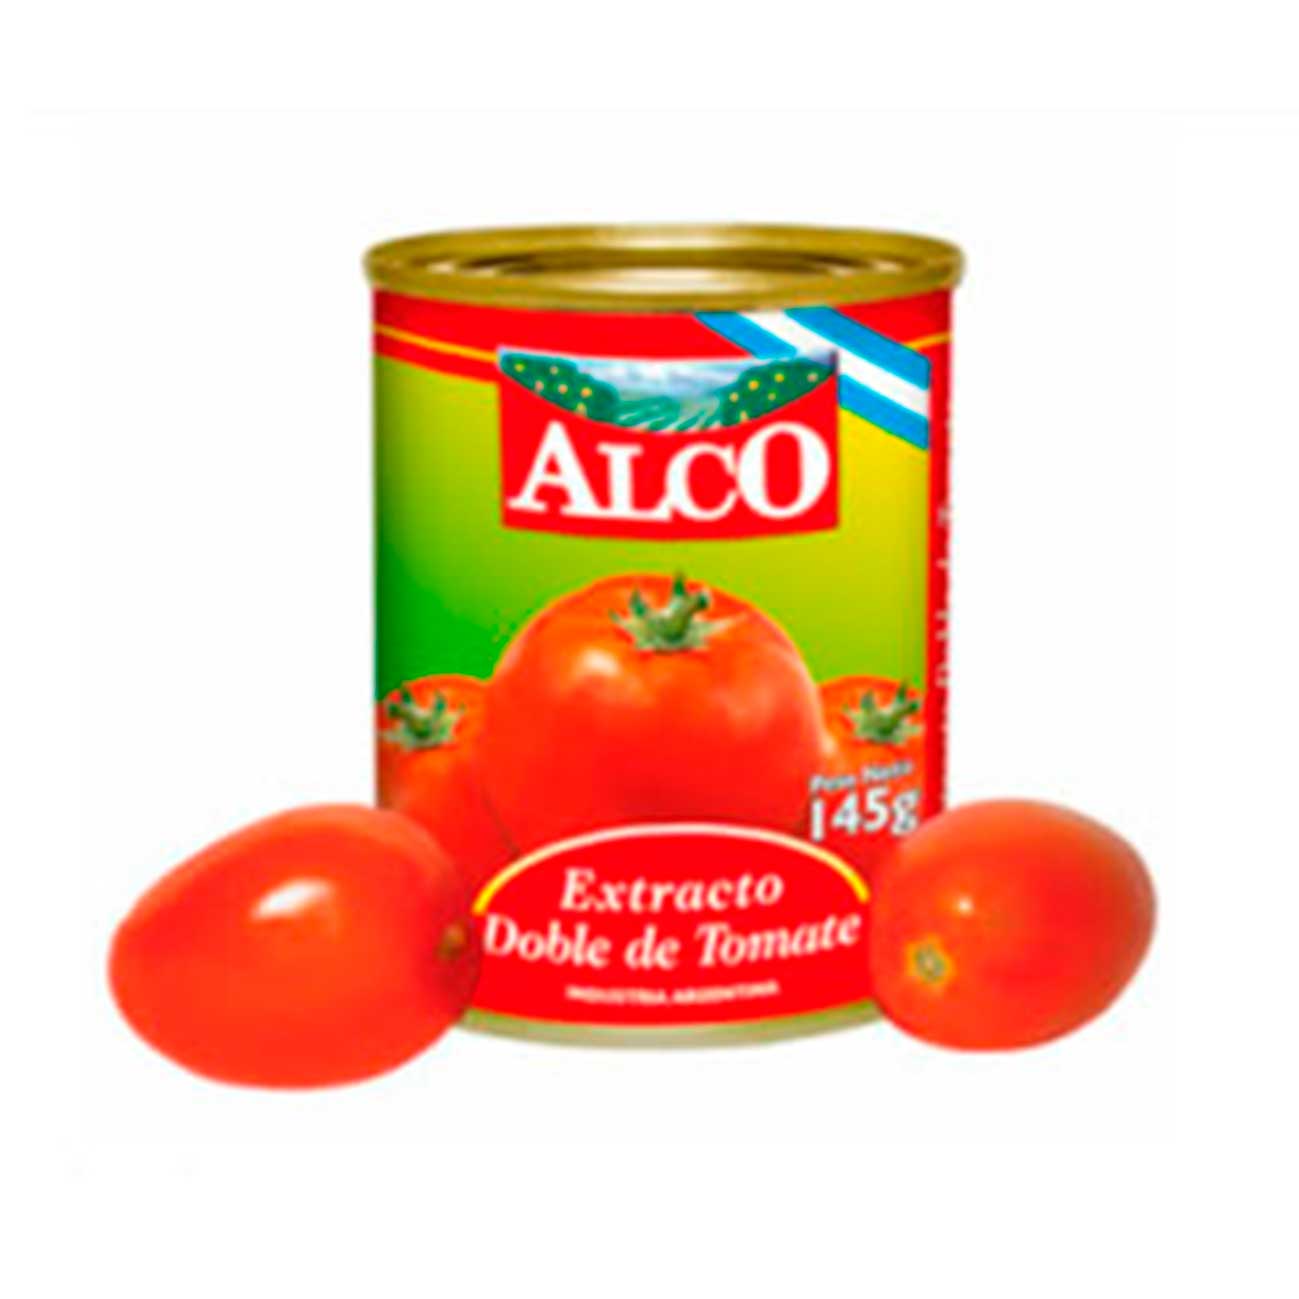 Extracto doble de tomate 145 g ALCO